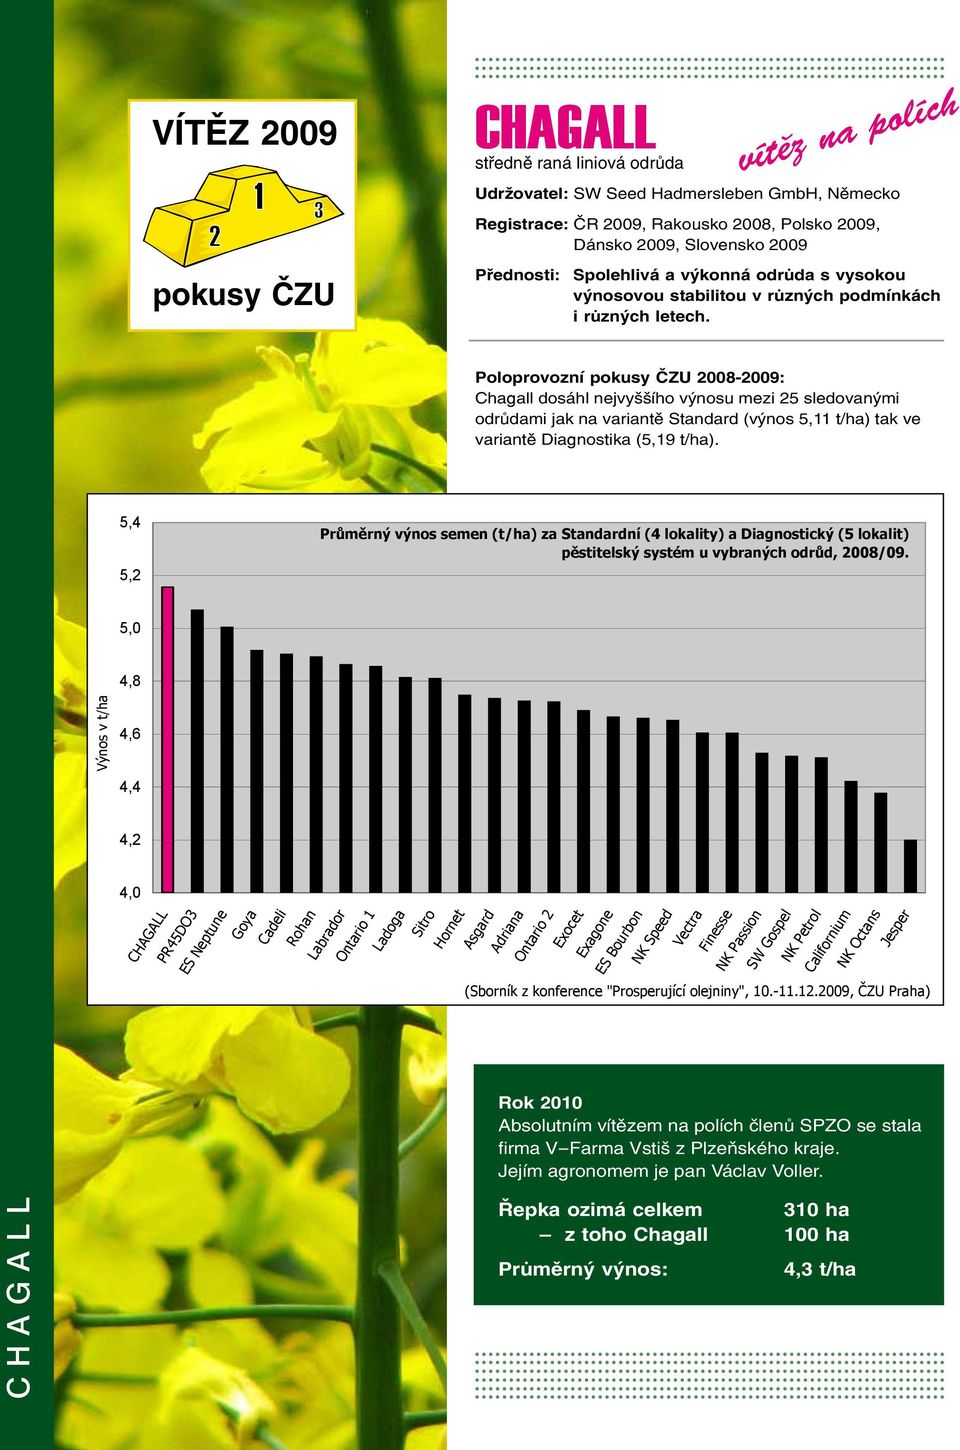 ˇ Poloprovozní pokusy ČZU 2008-2009: Chagall dosáhl nejvyššího výnosu mezi 25 sledovanými odrůdami jak na variantě Standard (výnos 5,11 t/ha) tak ve variantě Diagnostika (5,19 t/ha).